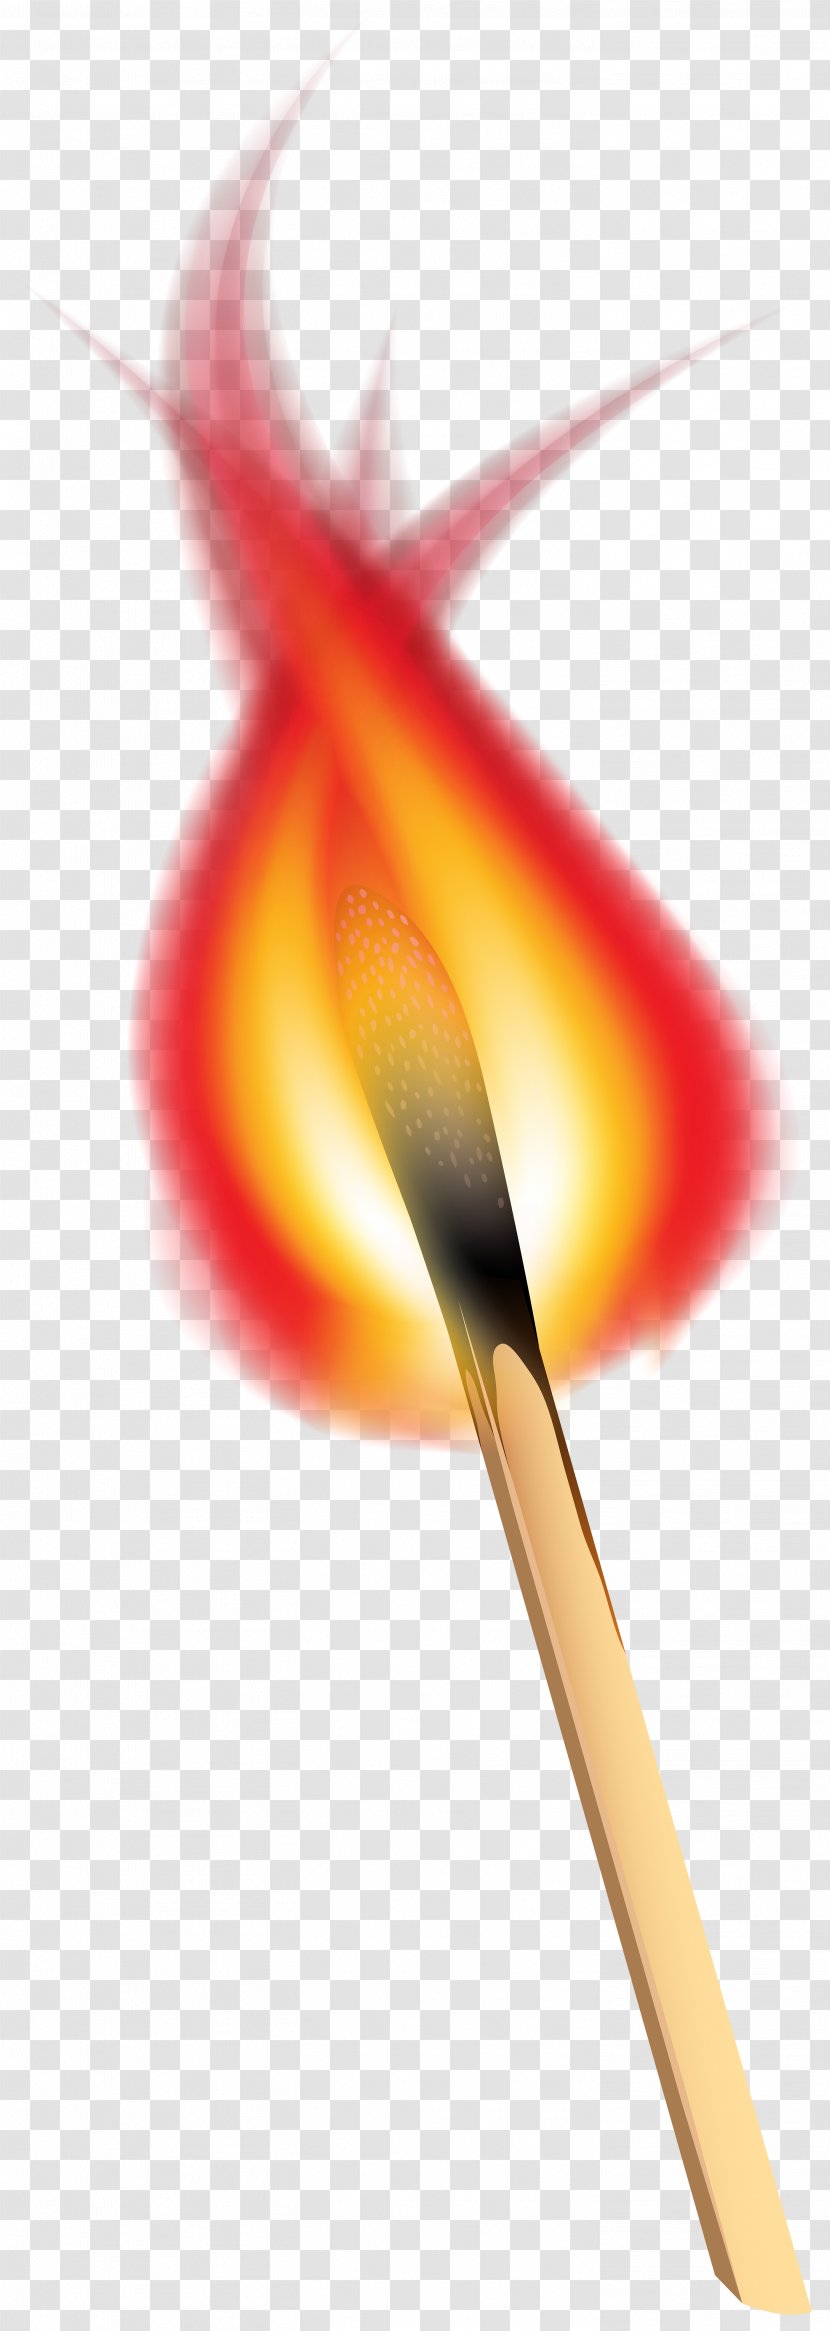 Red Graphics Close-up Petal - Burning Match Clip Art Image Transparent PNG